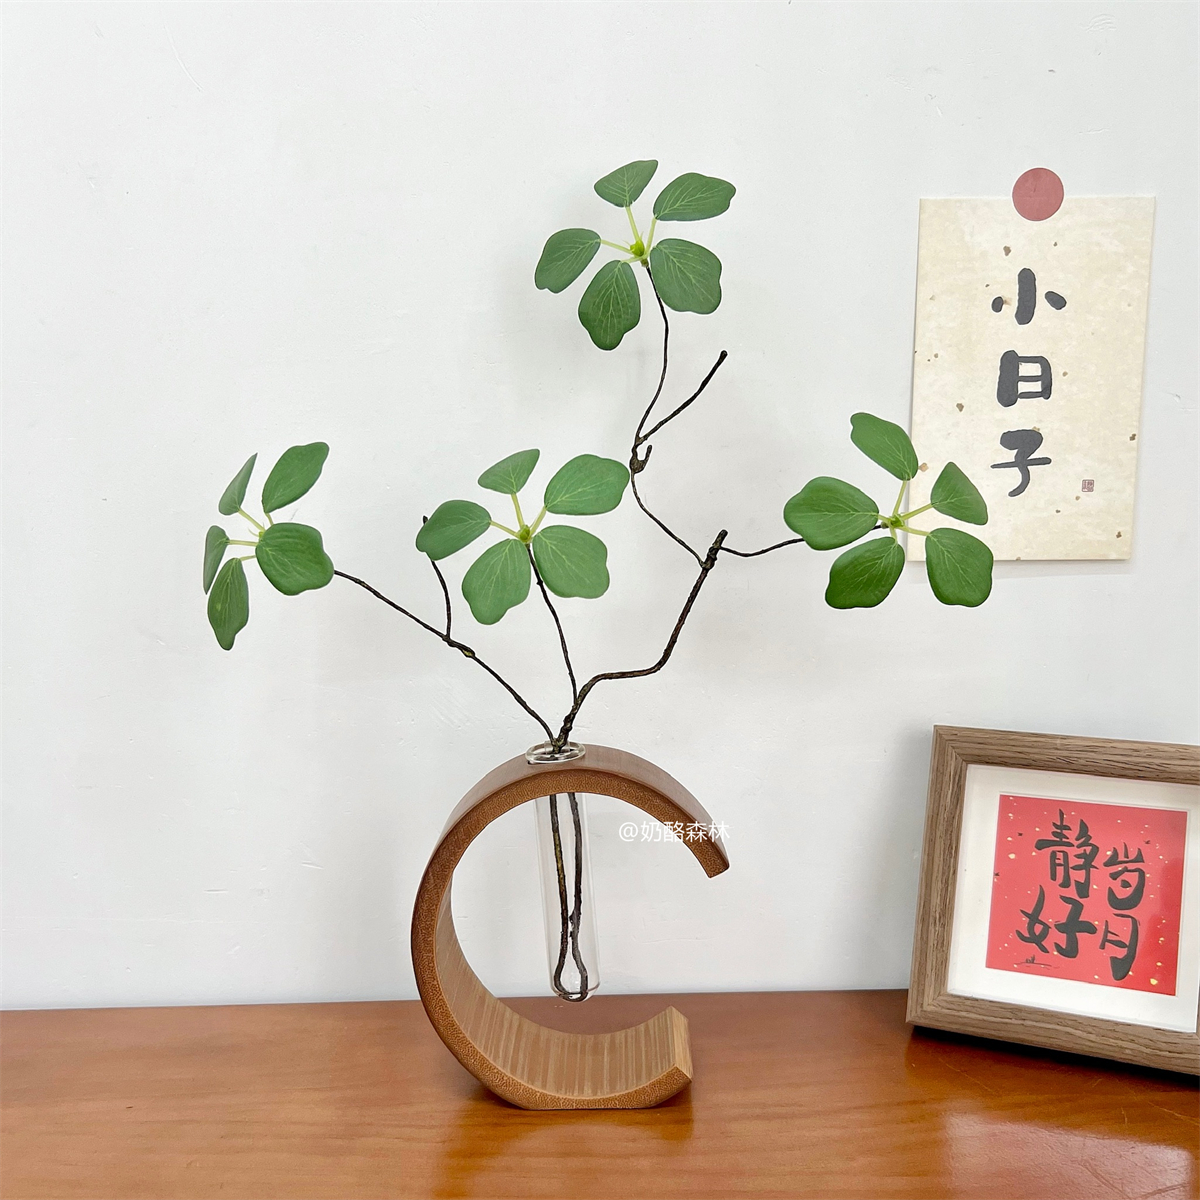 中式竹筒花瓶 創意吊鐘觀音蓮葉禪意花瓶 綠植水培